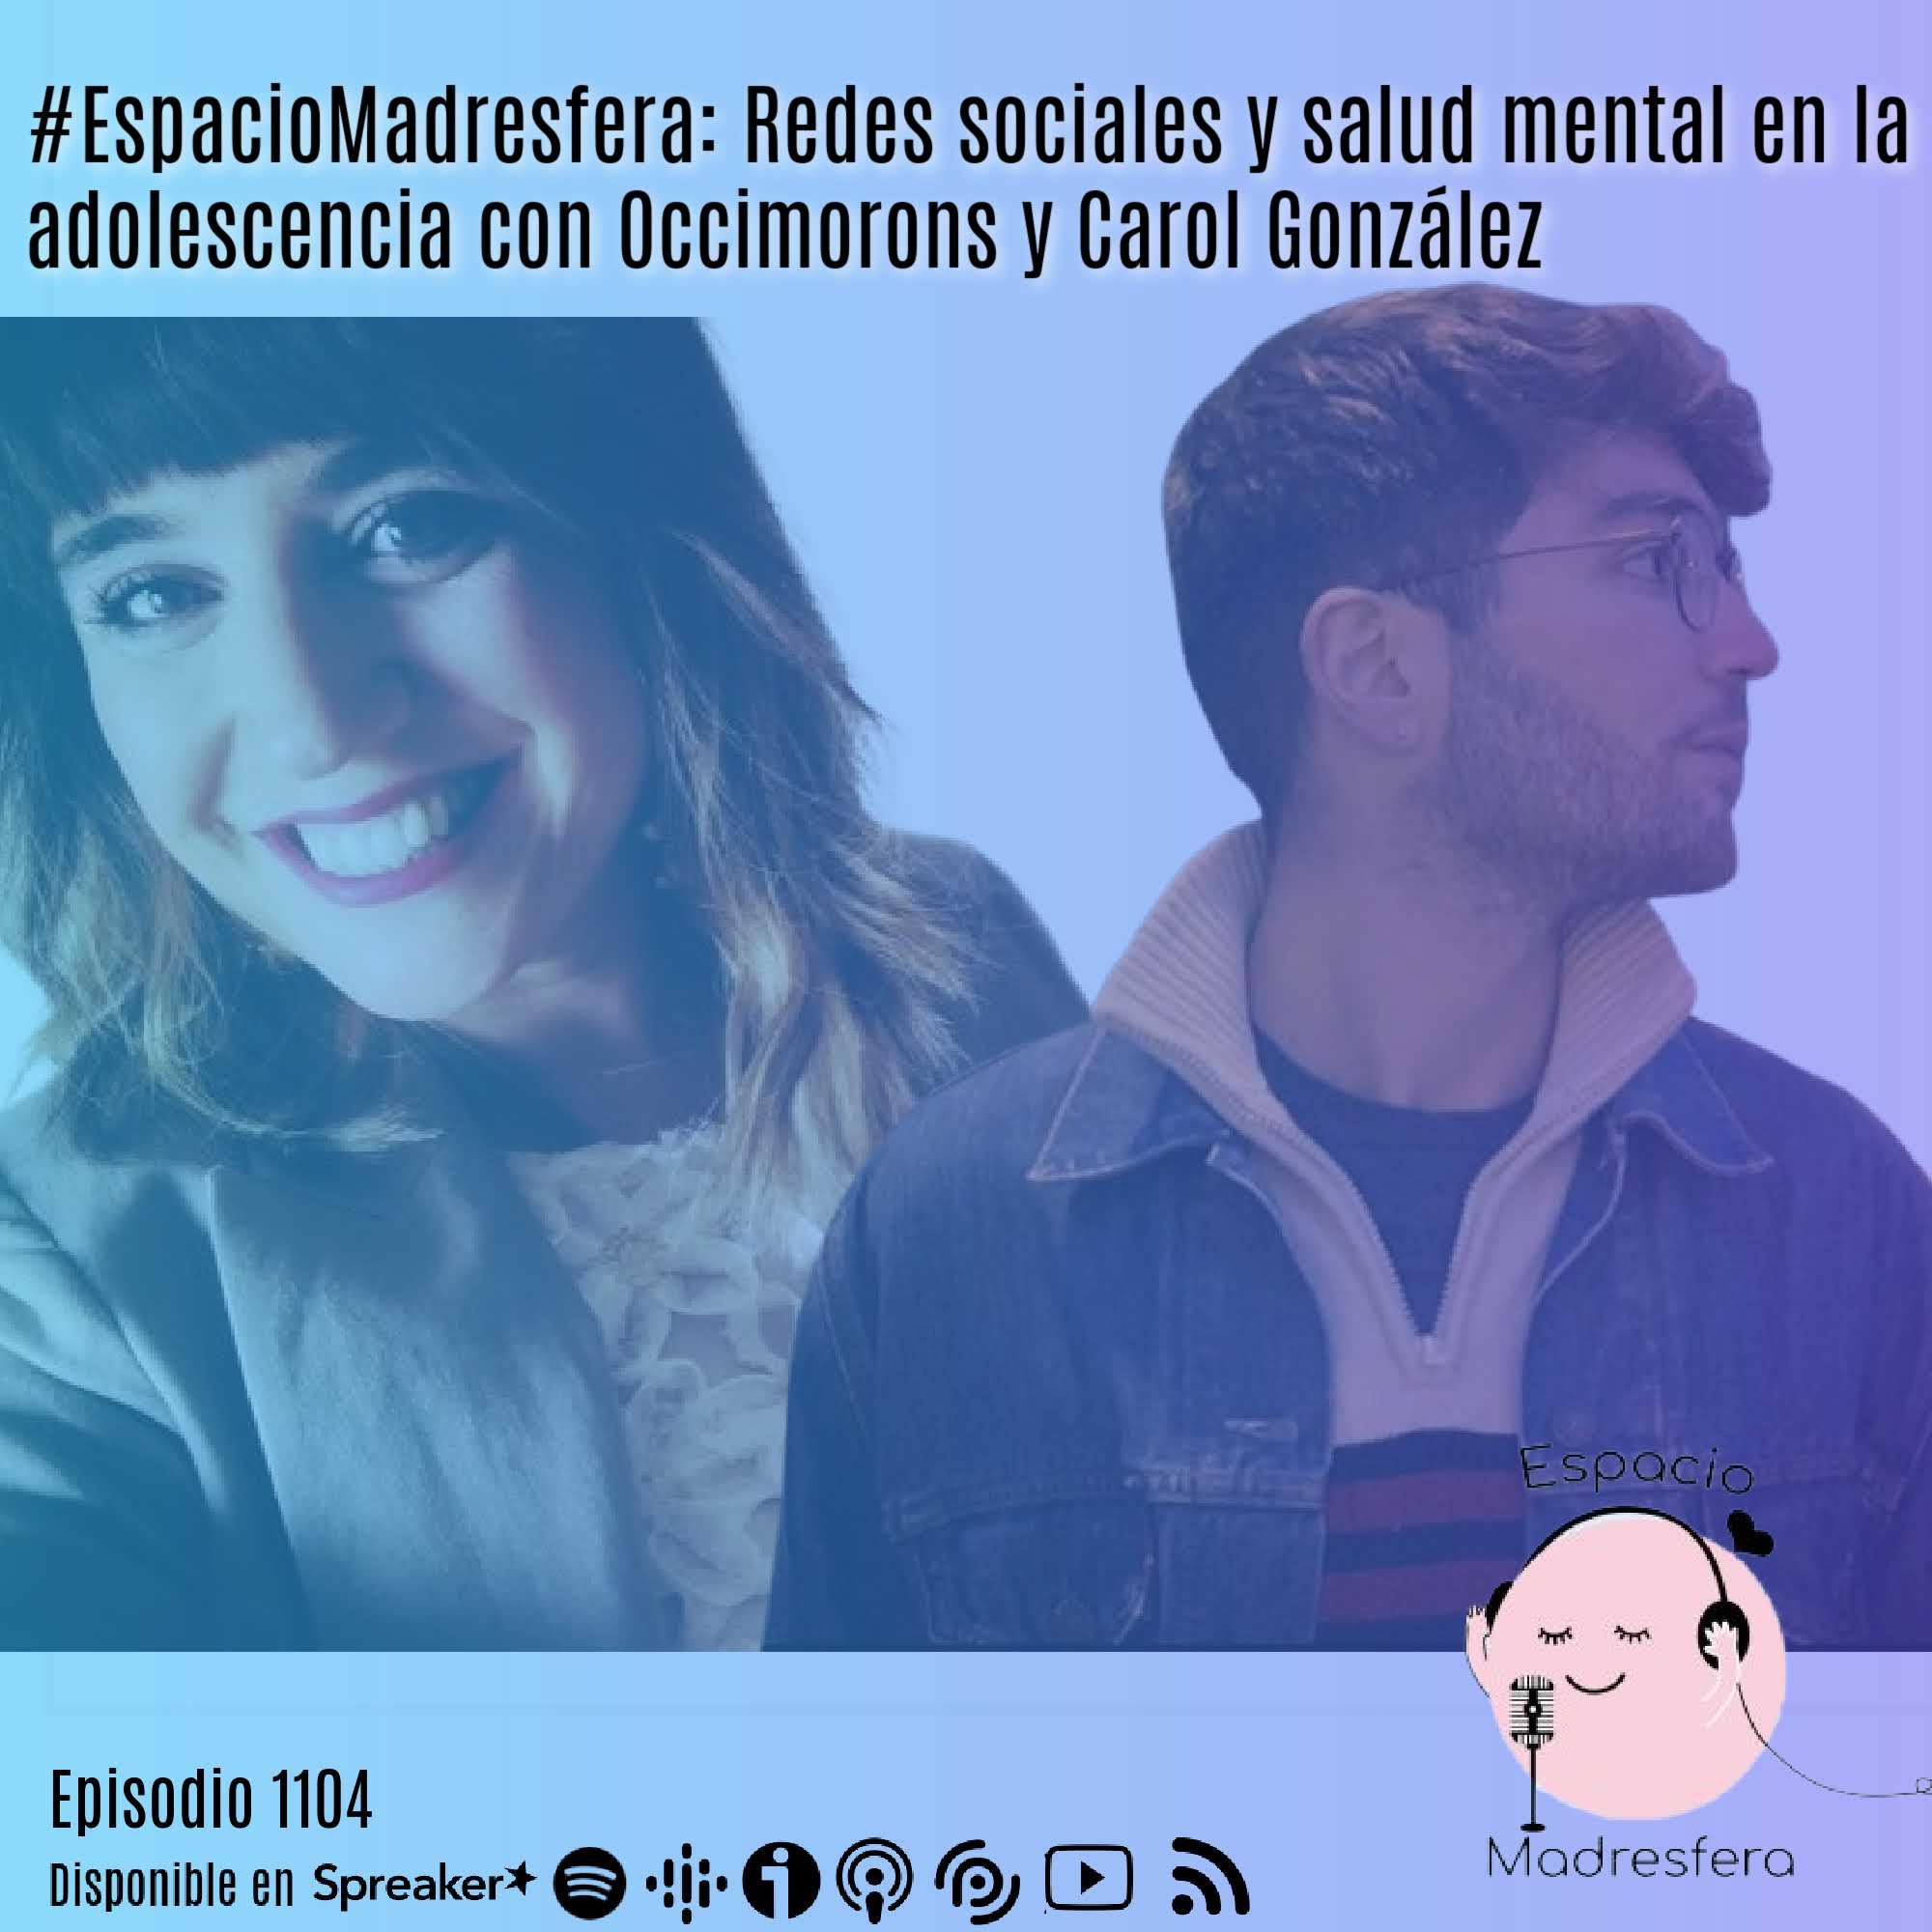 #EspacioMadresfera: Redes sociales y salud mental en la adolescencia con @Occimorons y @ElislotedeCaro